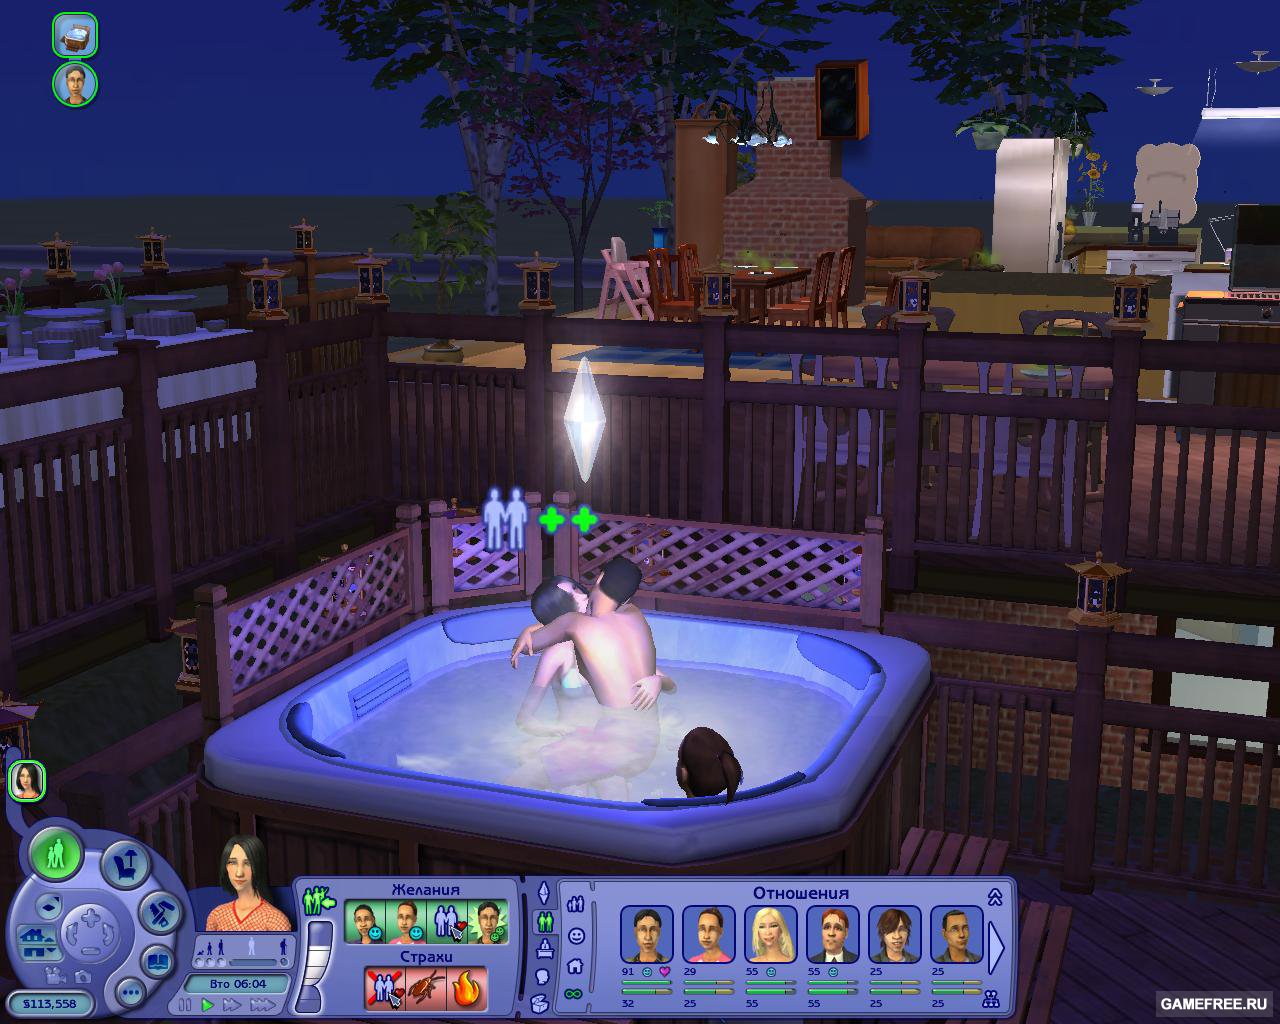 The Sims-2 Секс в большом городе скачать торрент